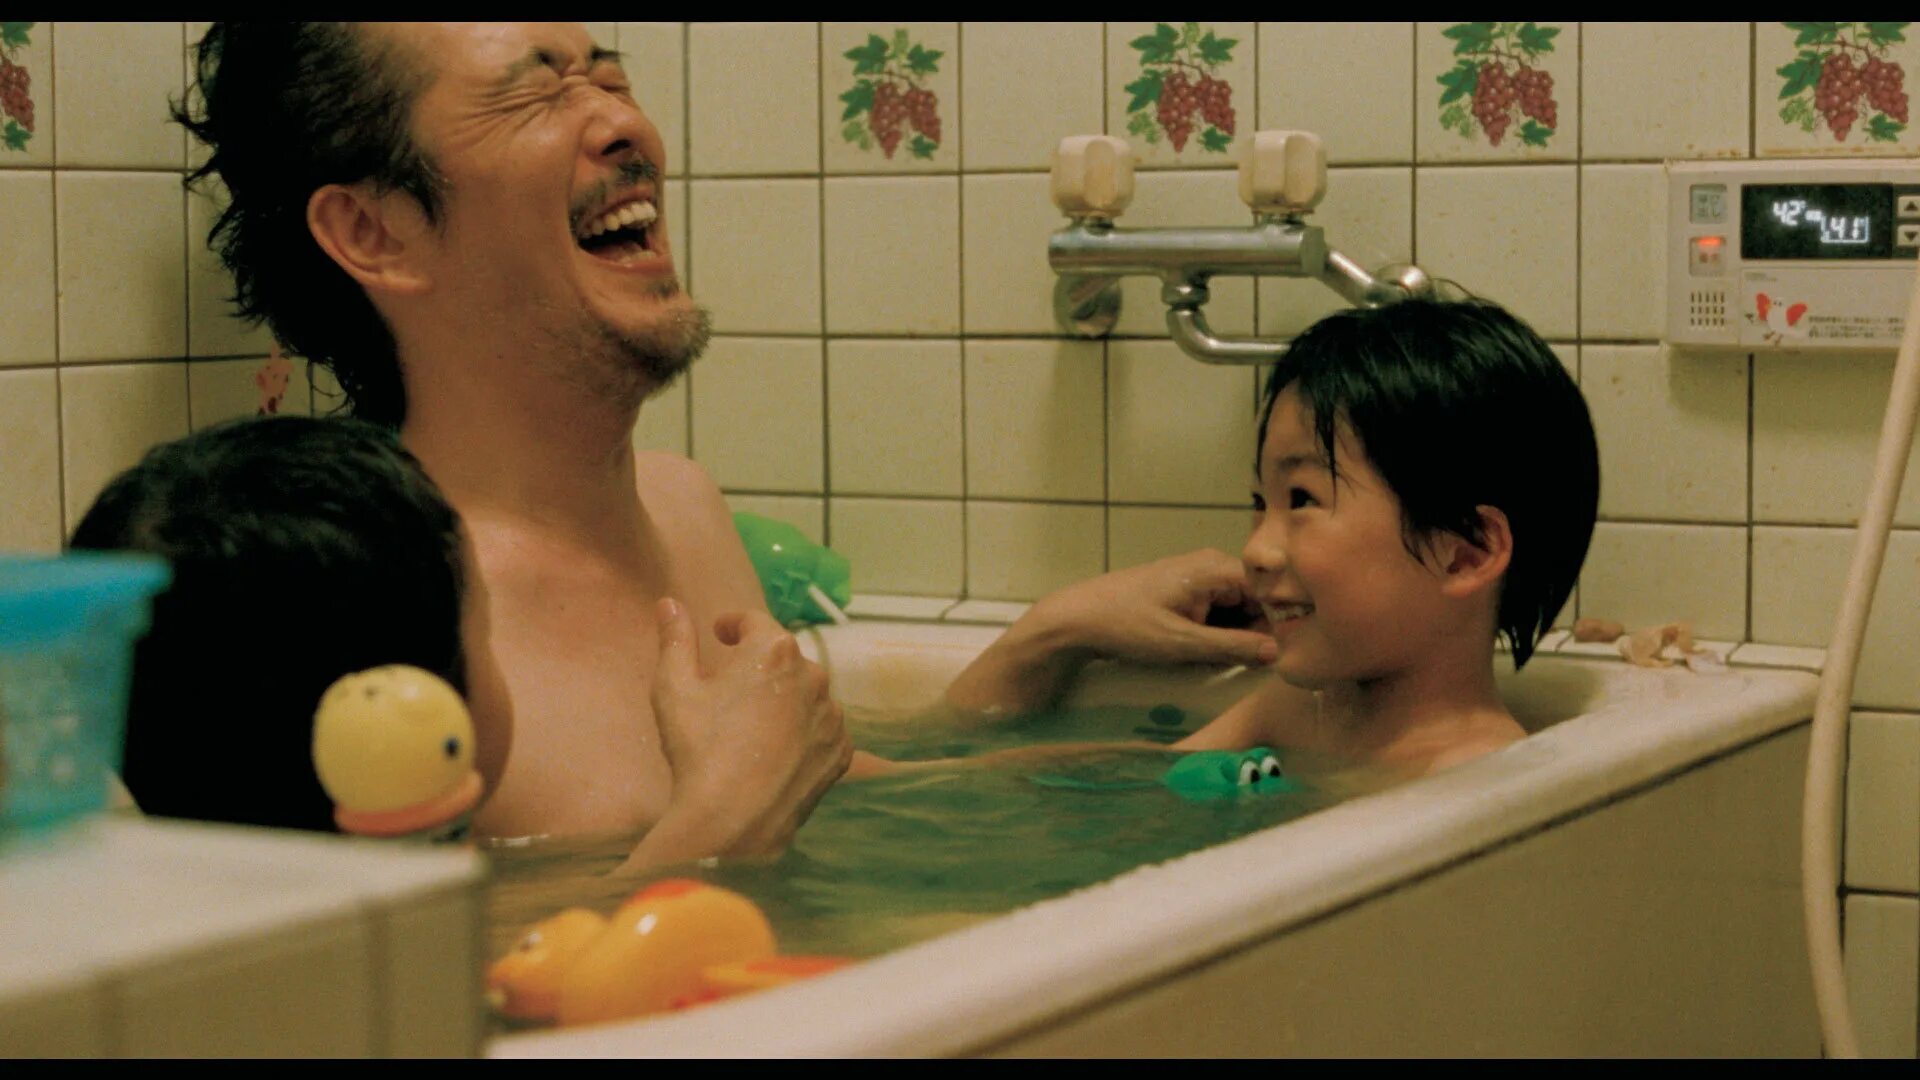 Япония купаться. Японец в ванной. Японская семья в ванной. Японские ванны с дочерьми.